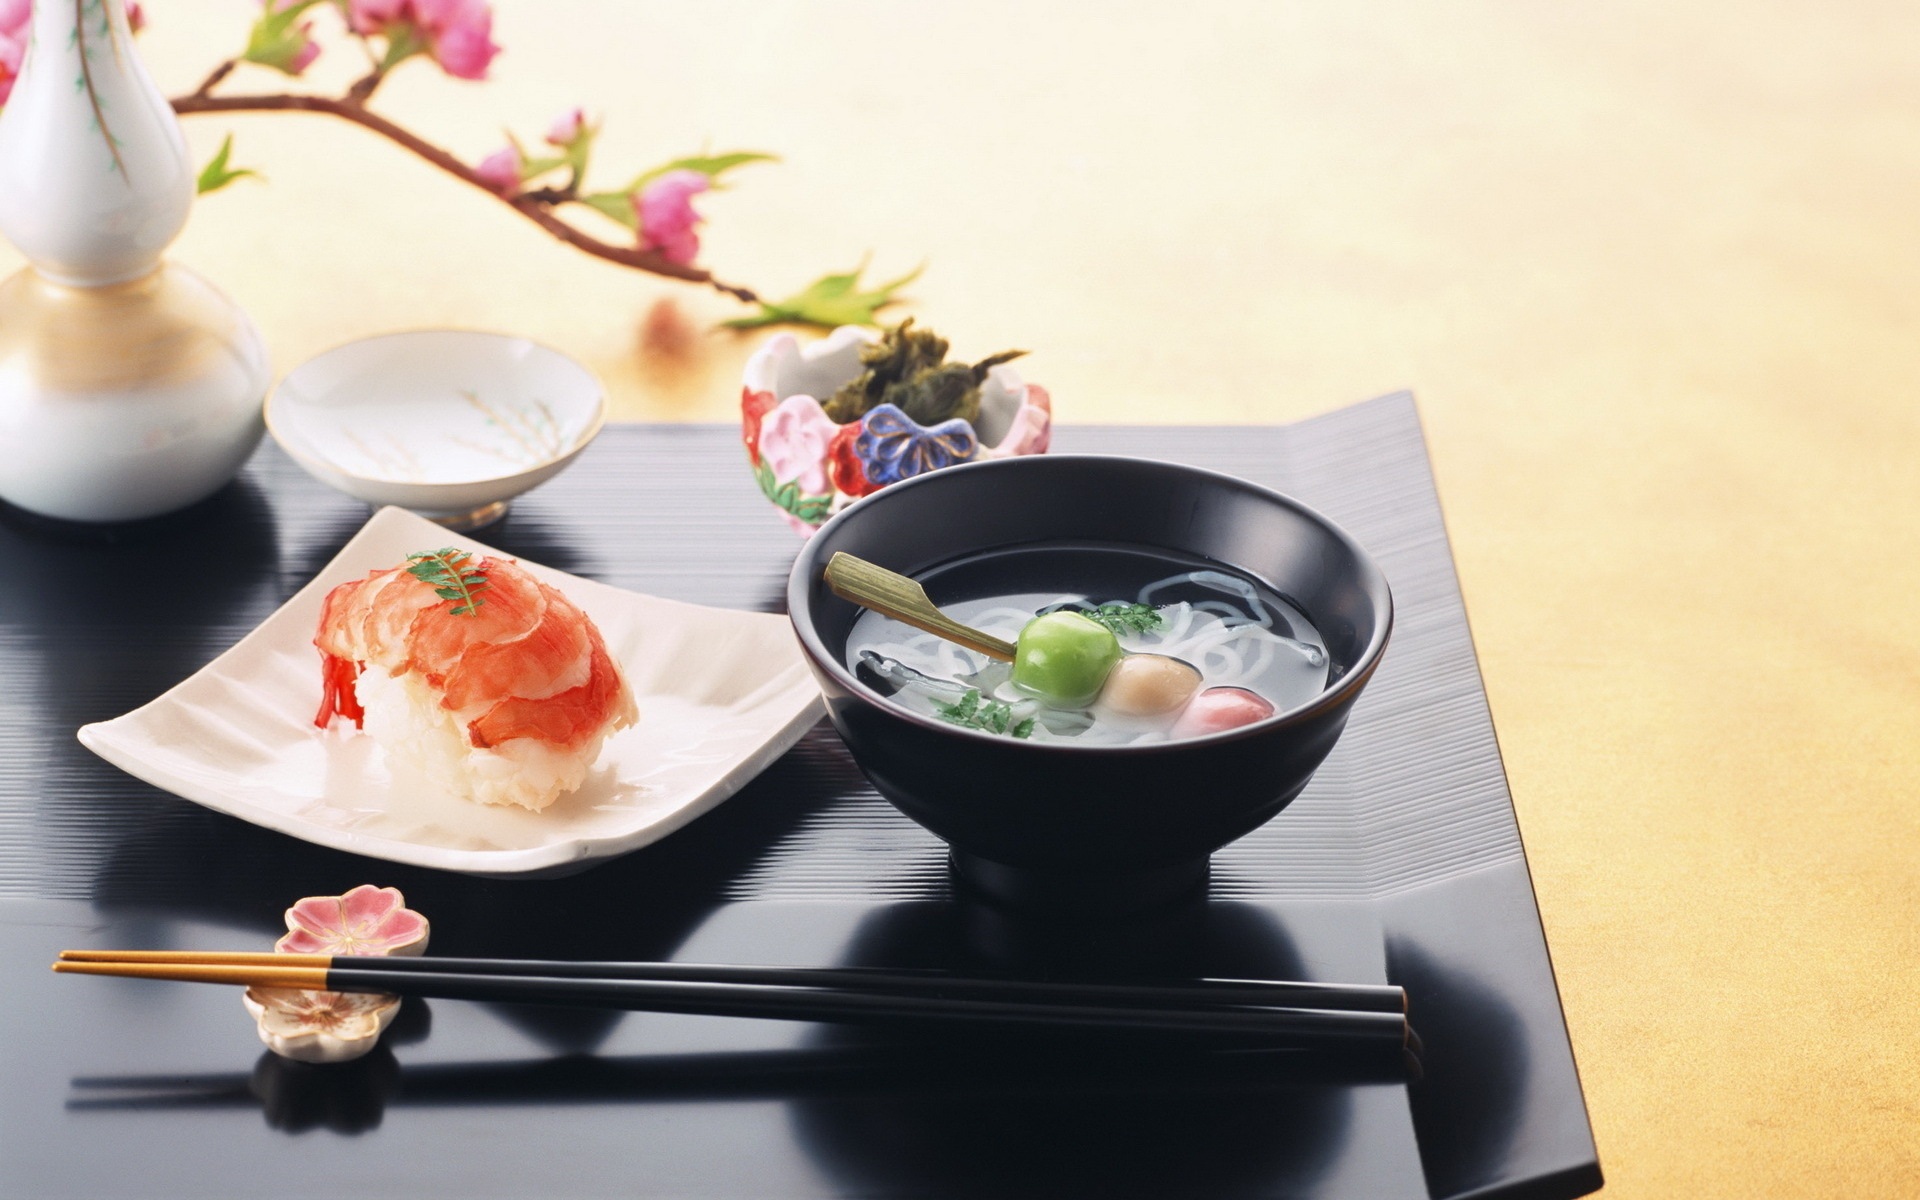 2013 07 23.01.42.00 15 quy tac an uong nen nho khi xuat ngoai 1 Khám phá nét văn hóa ẩm thực đa dạng của Nhật Bản